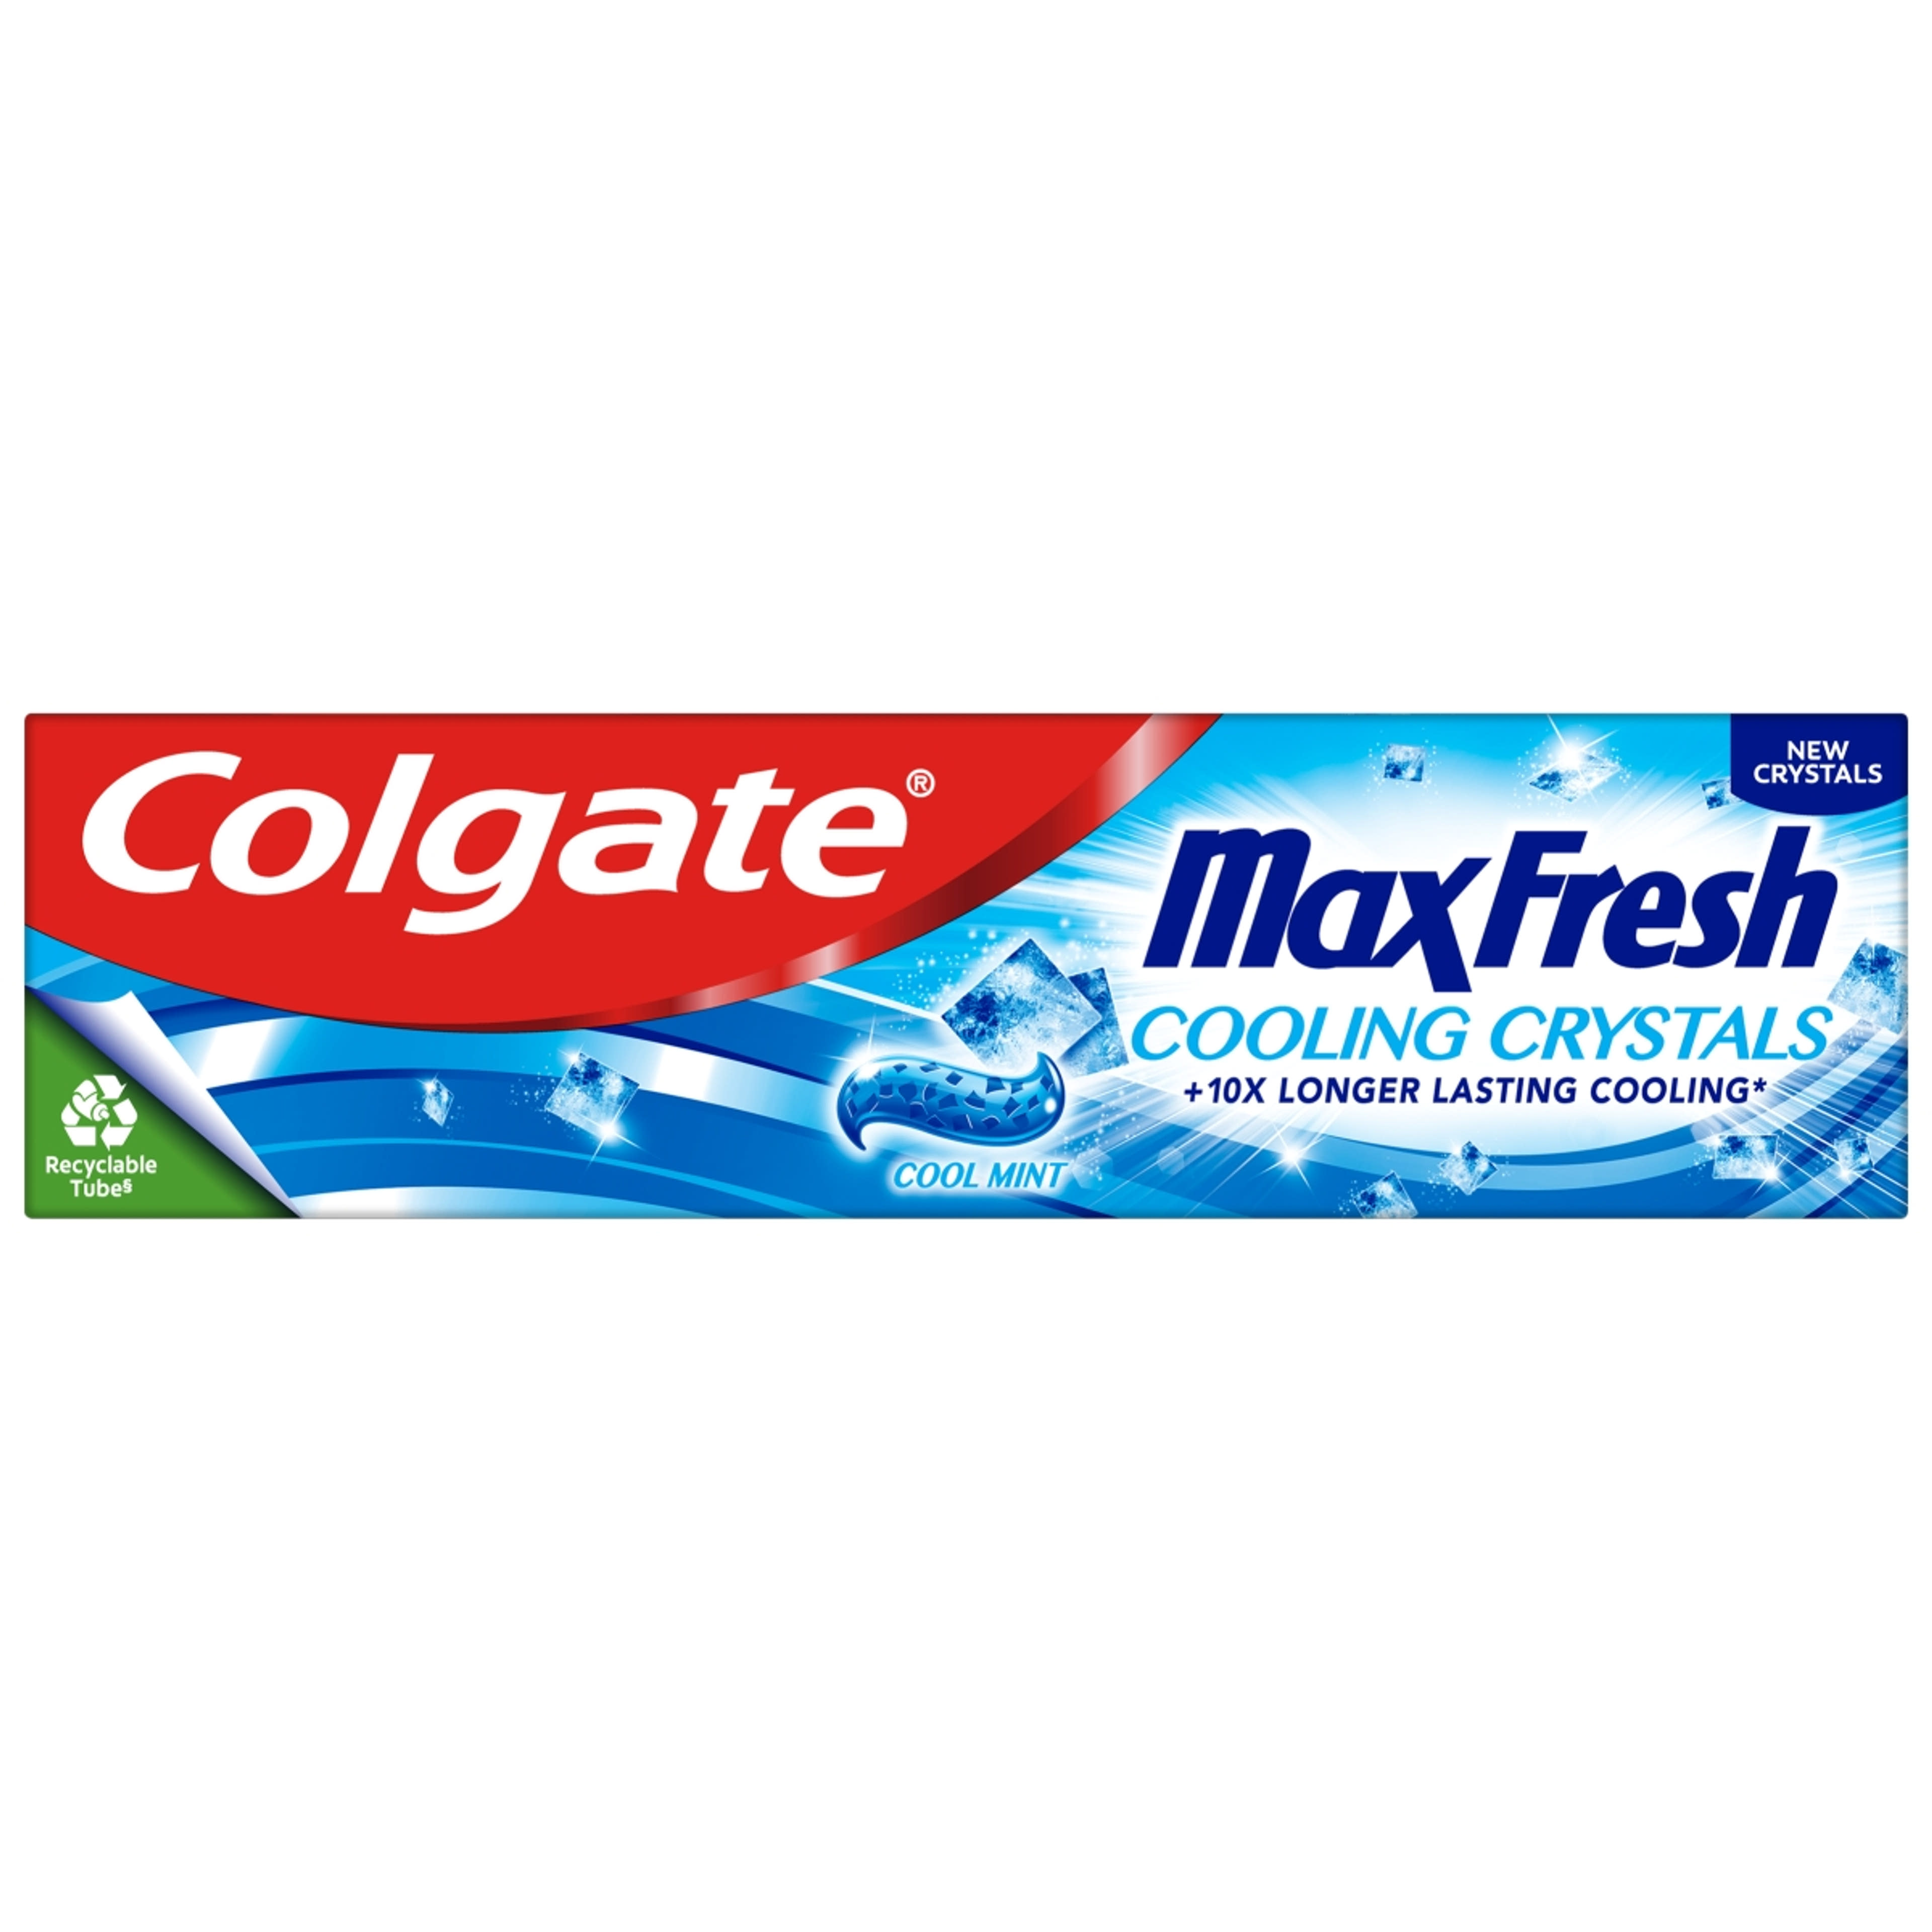 Colgate Max Fresh Cooling Crystals fogkrém - 75 ml